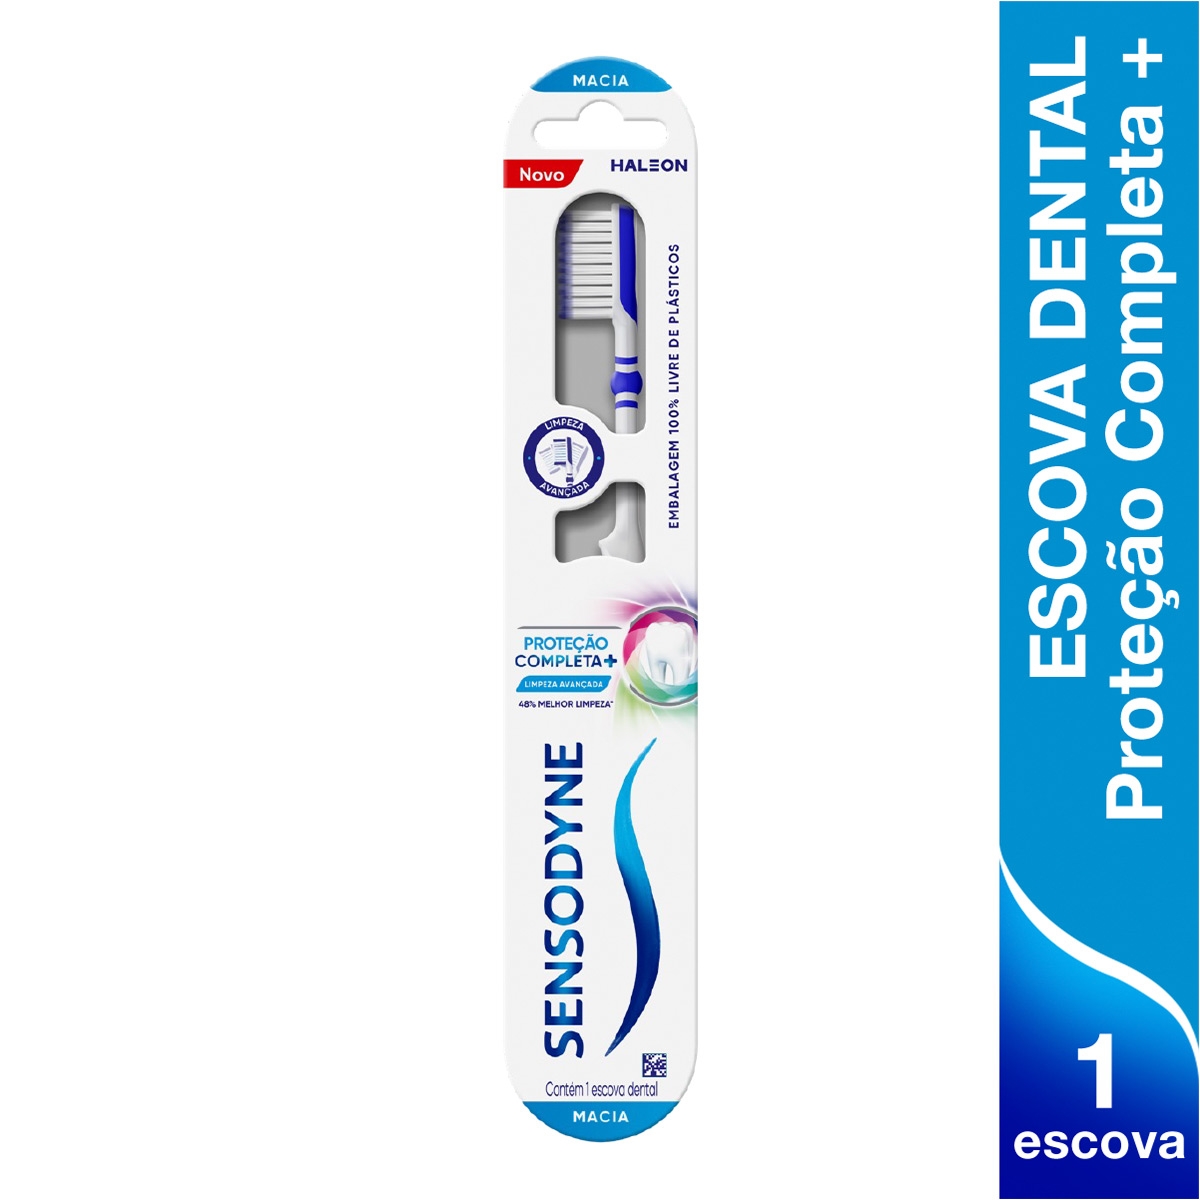 Escova de Dente Sensodyne Proteção Completa+ Macia 1 unidade